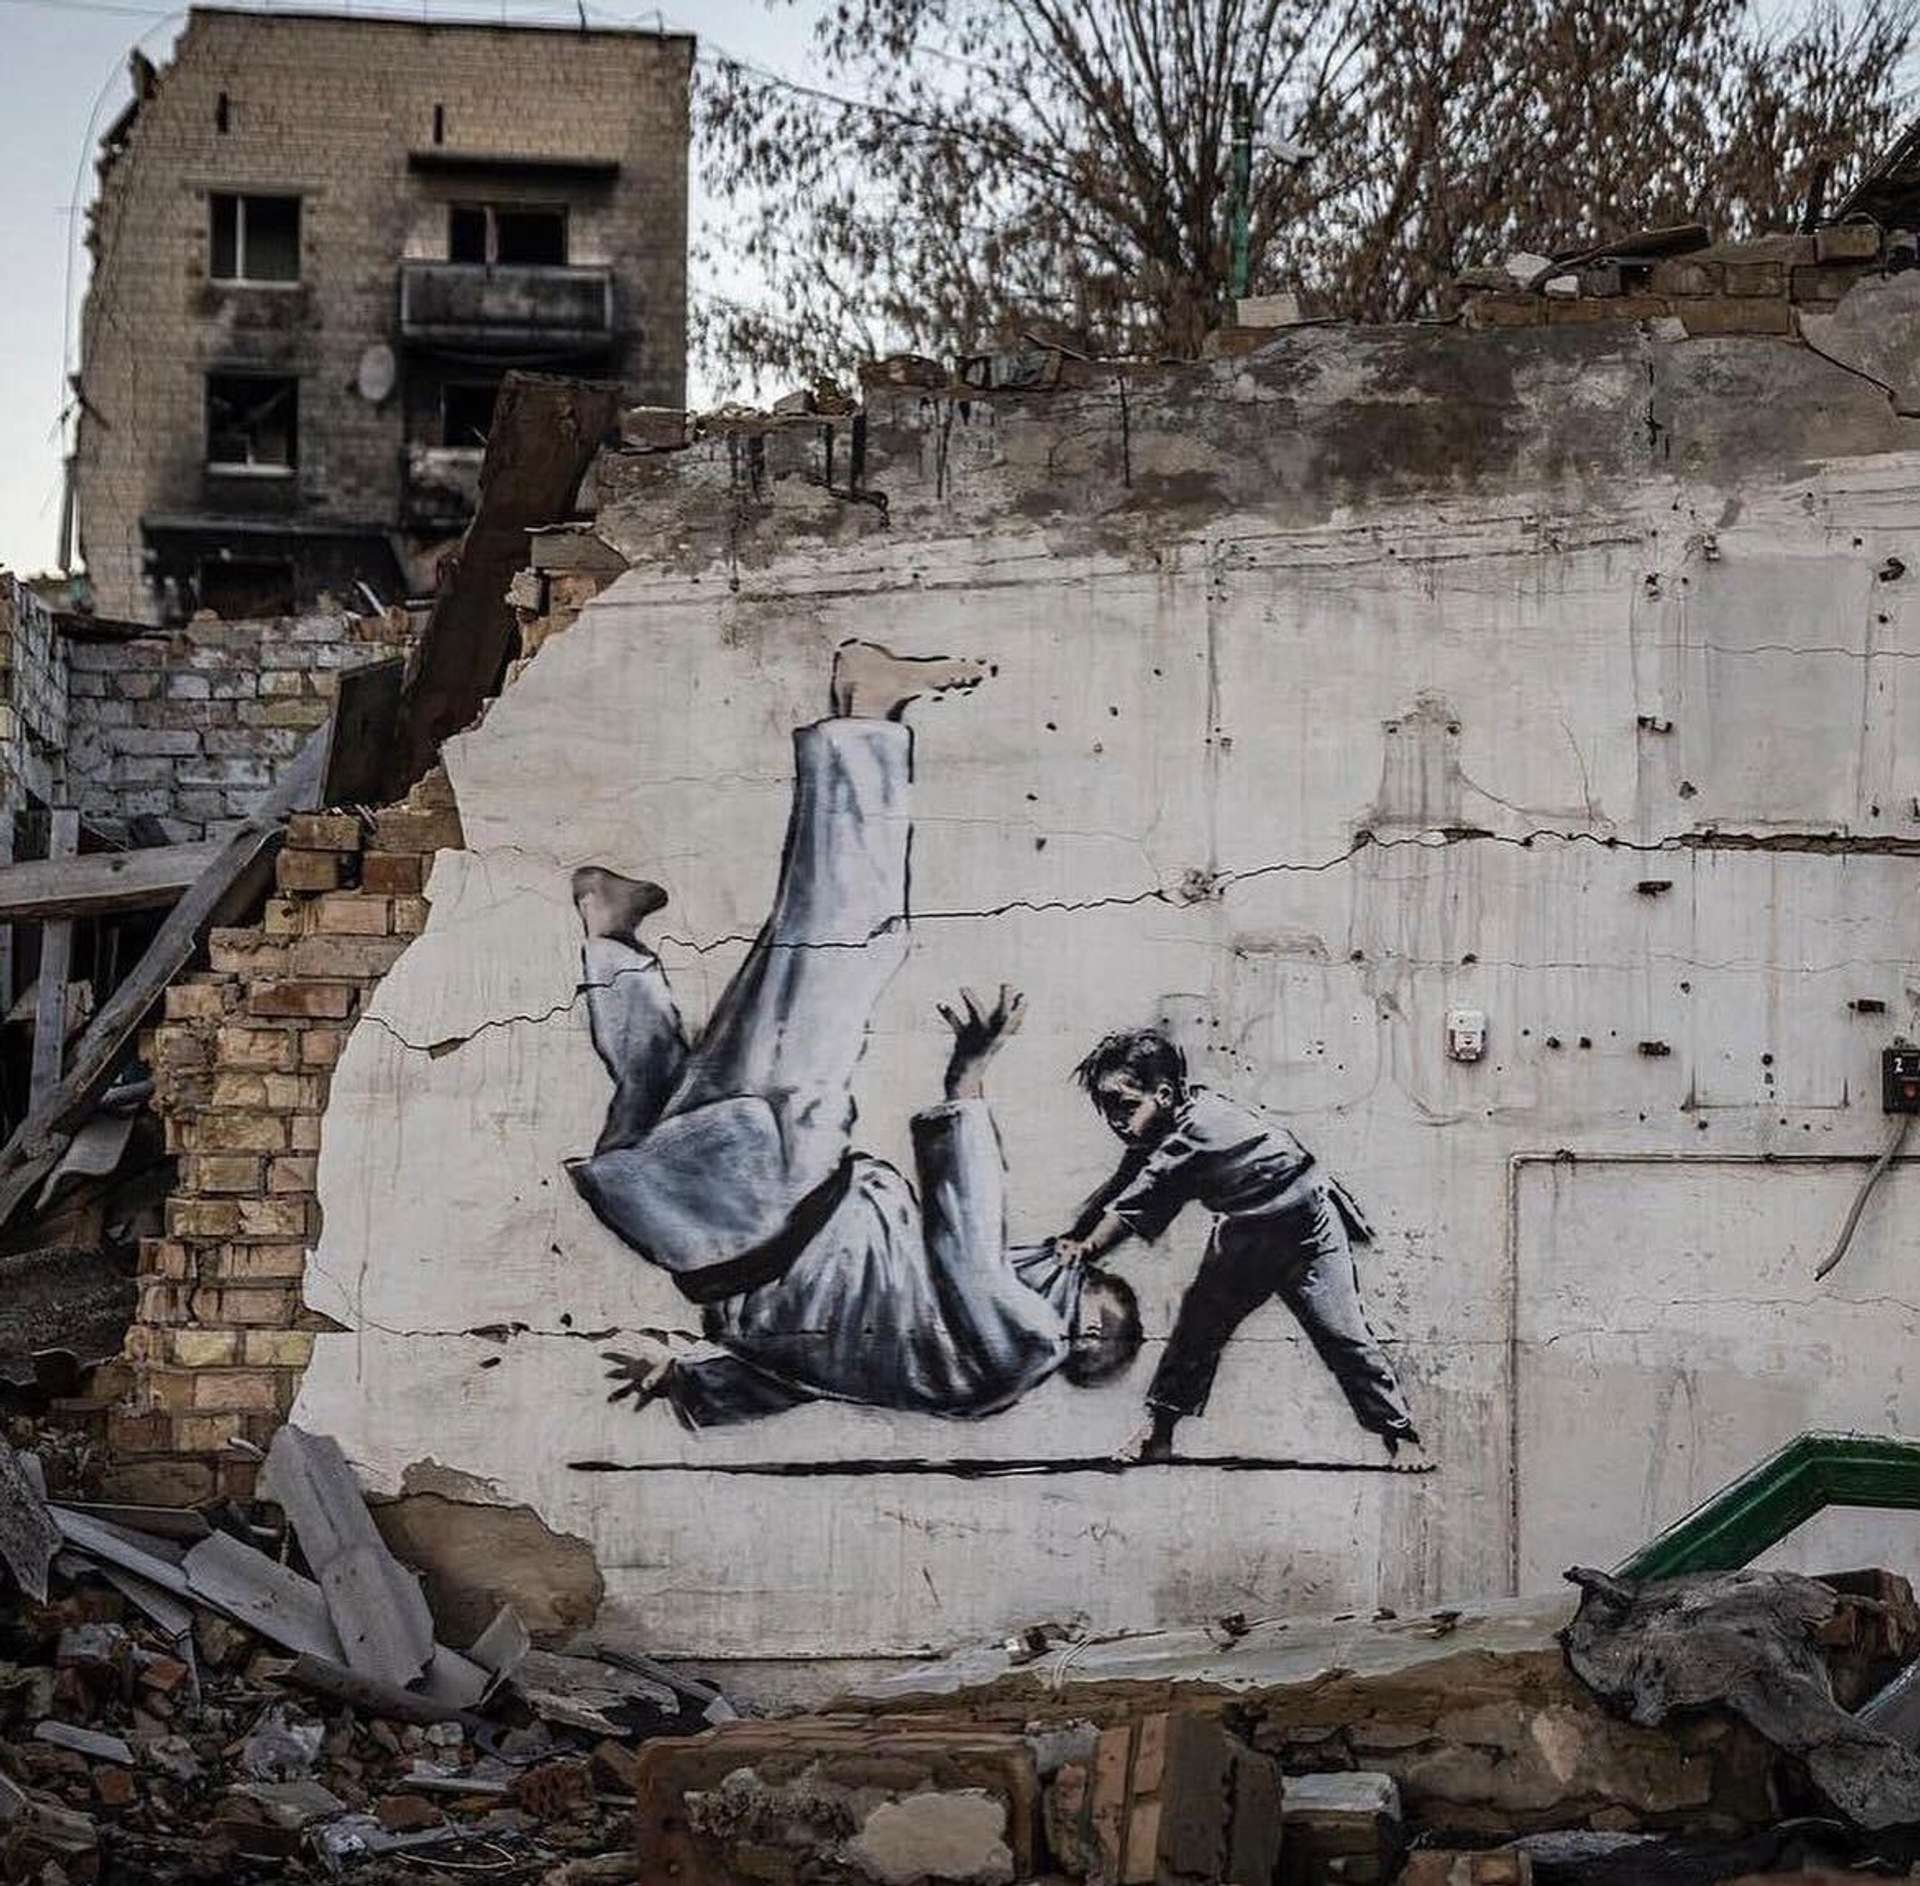 Banksy For Ukraine: New Murals of Solidarity